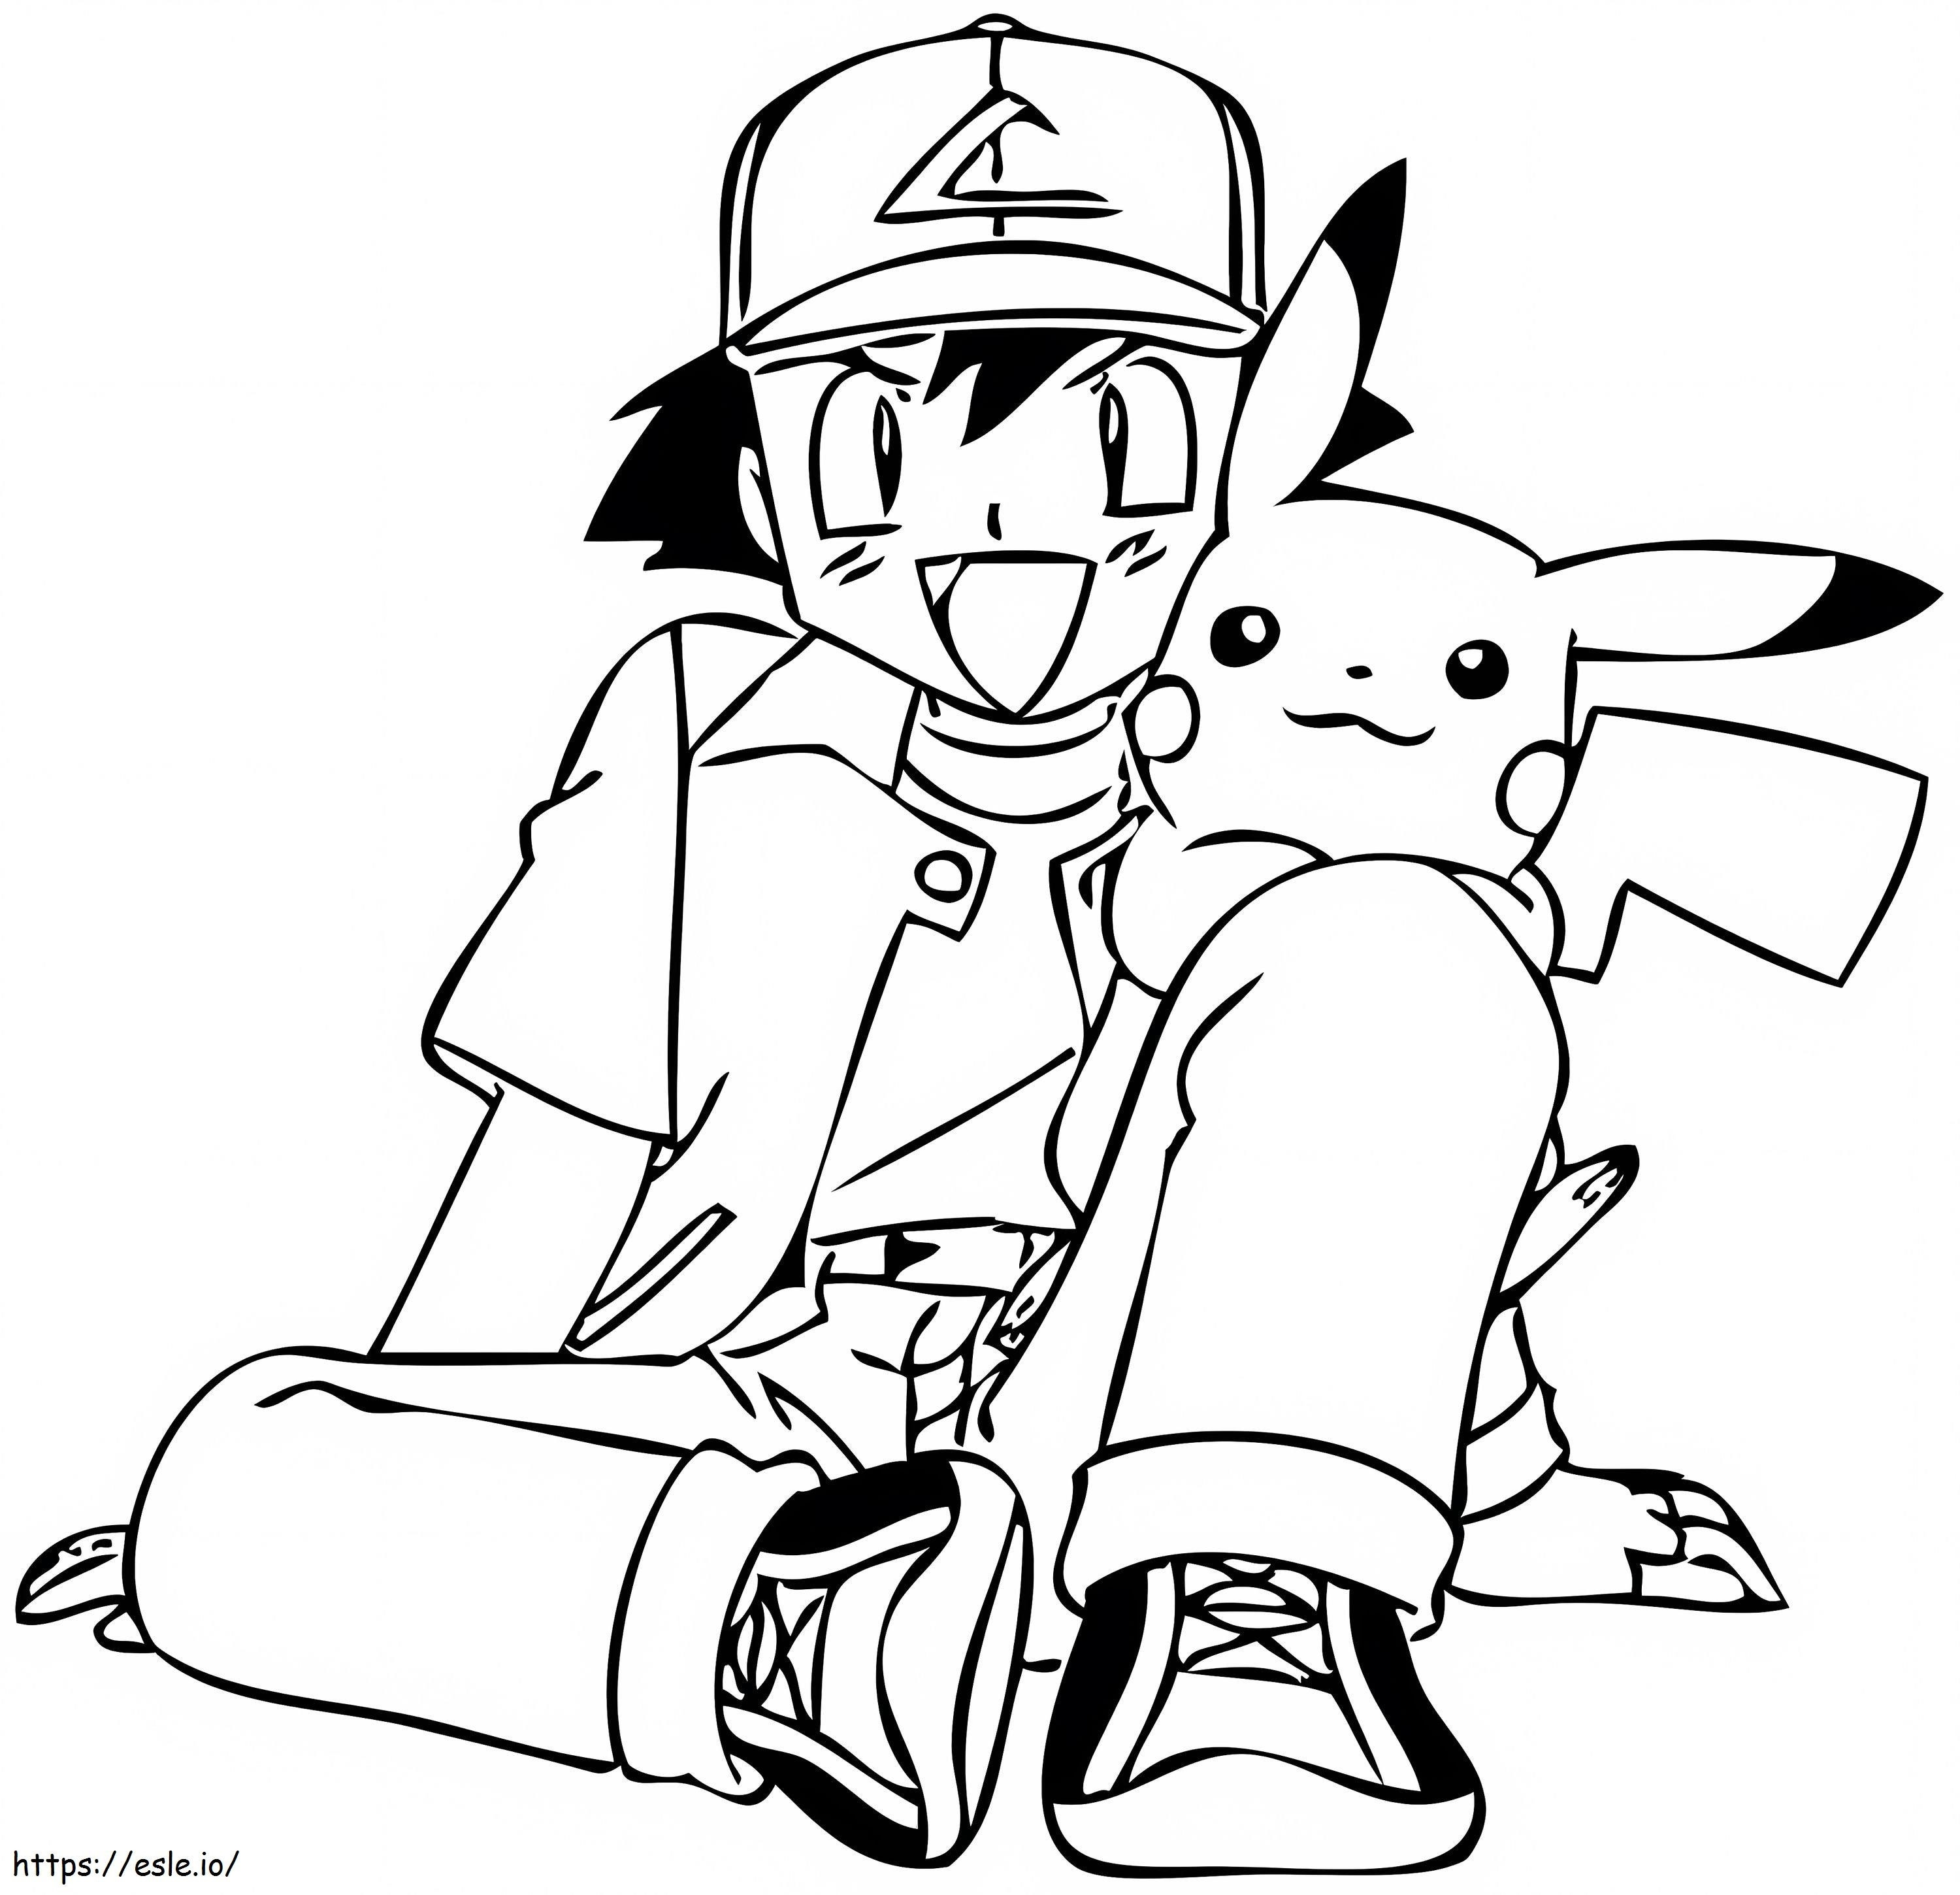 Ash Ketchum para impressão com Pikachu para colorir